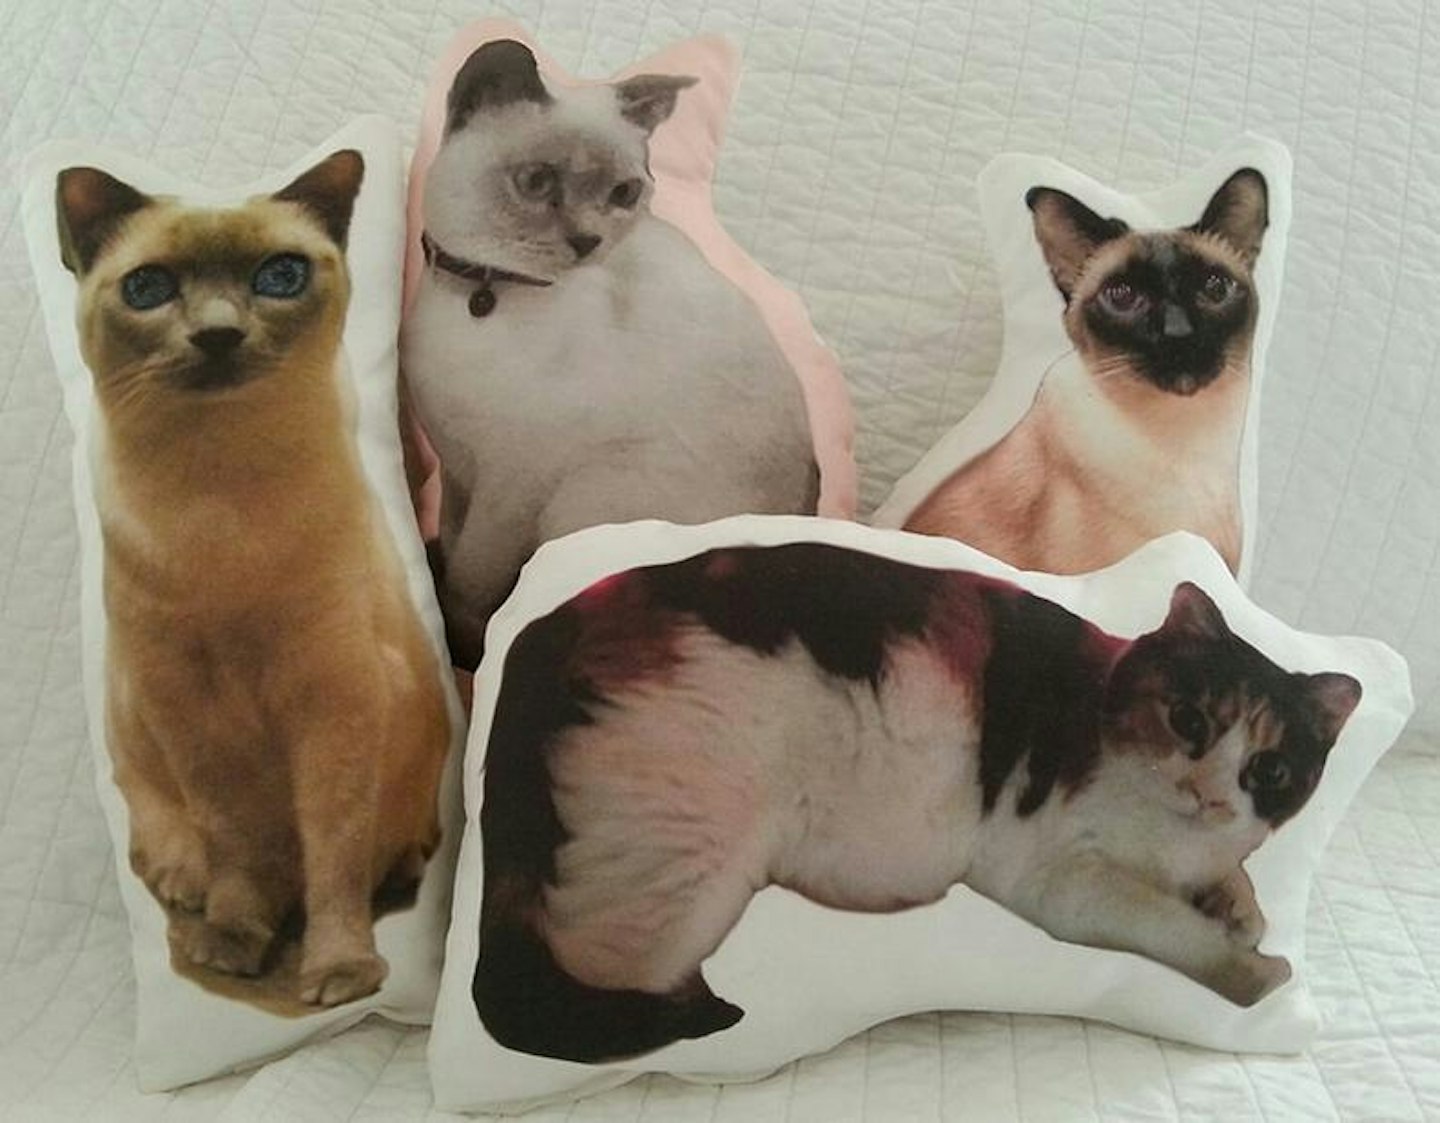 Custom Pet Photo Pillow